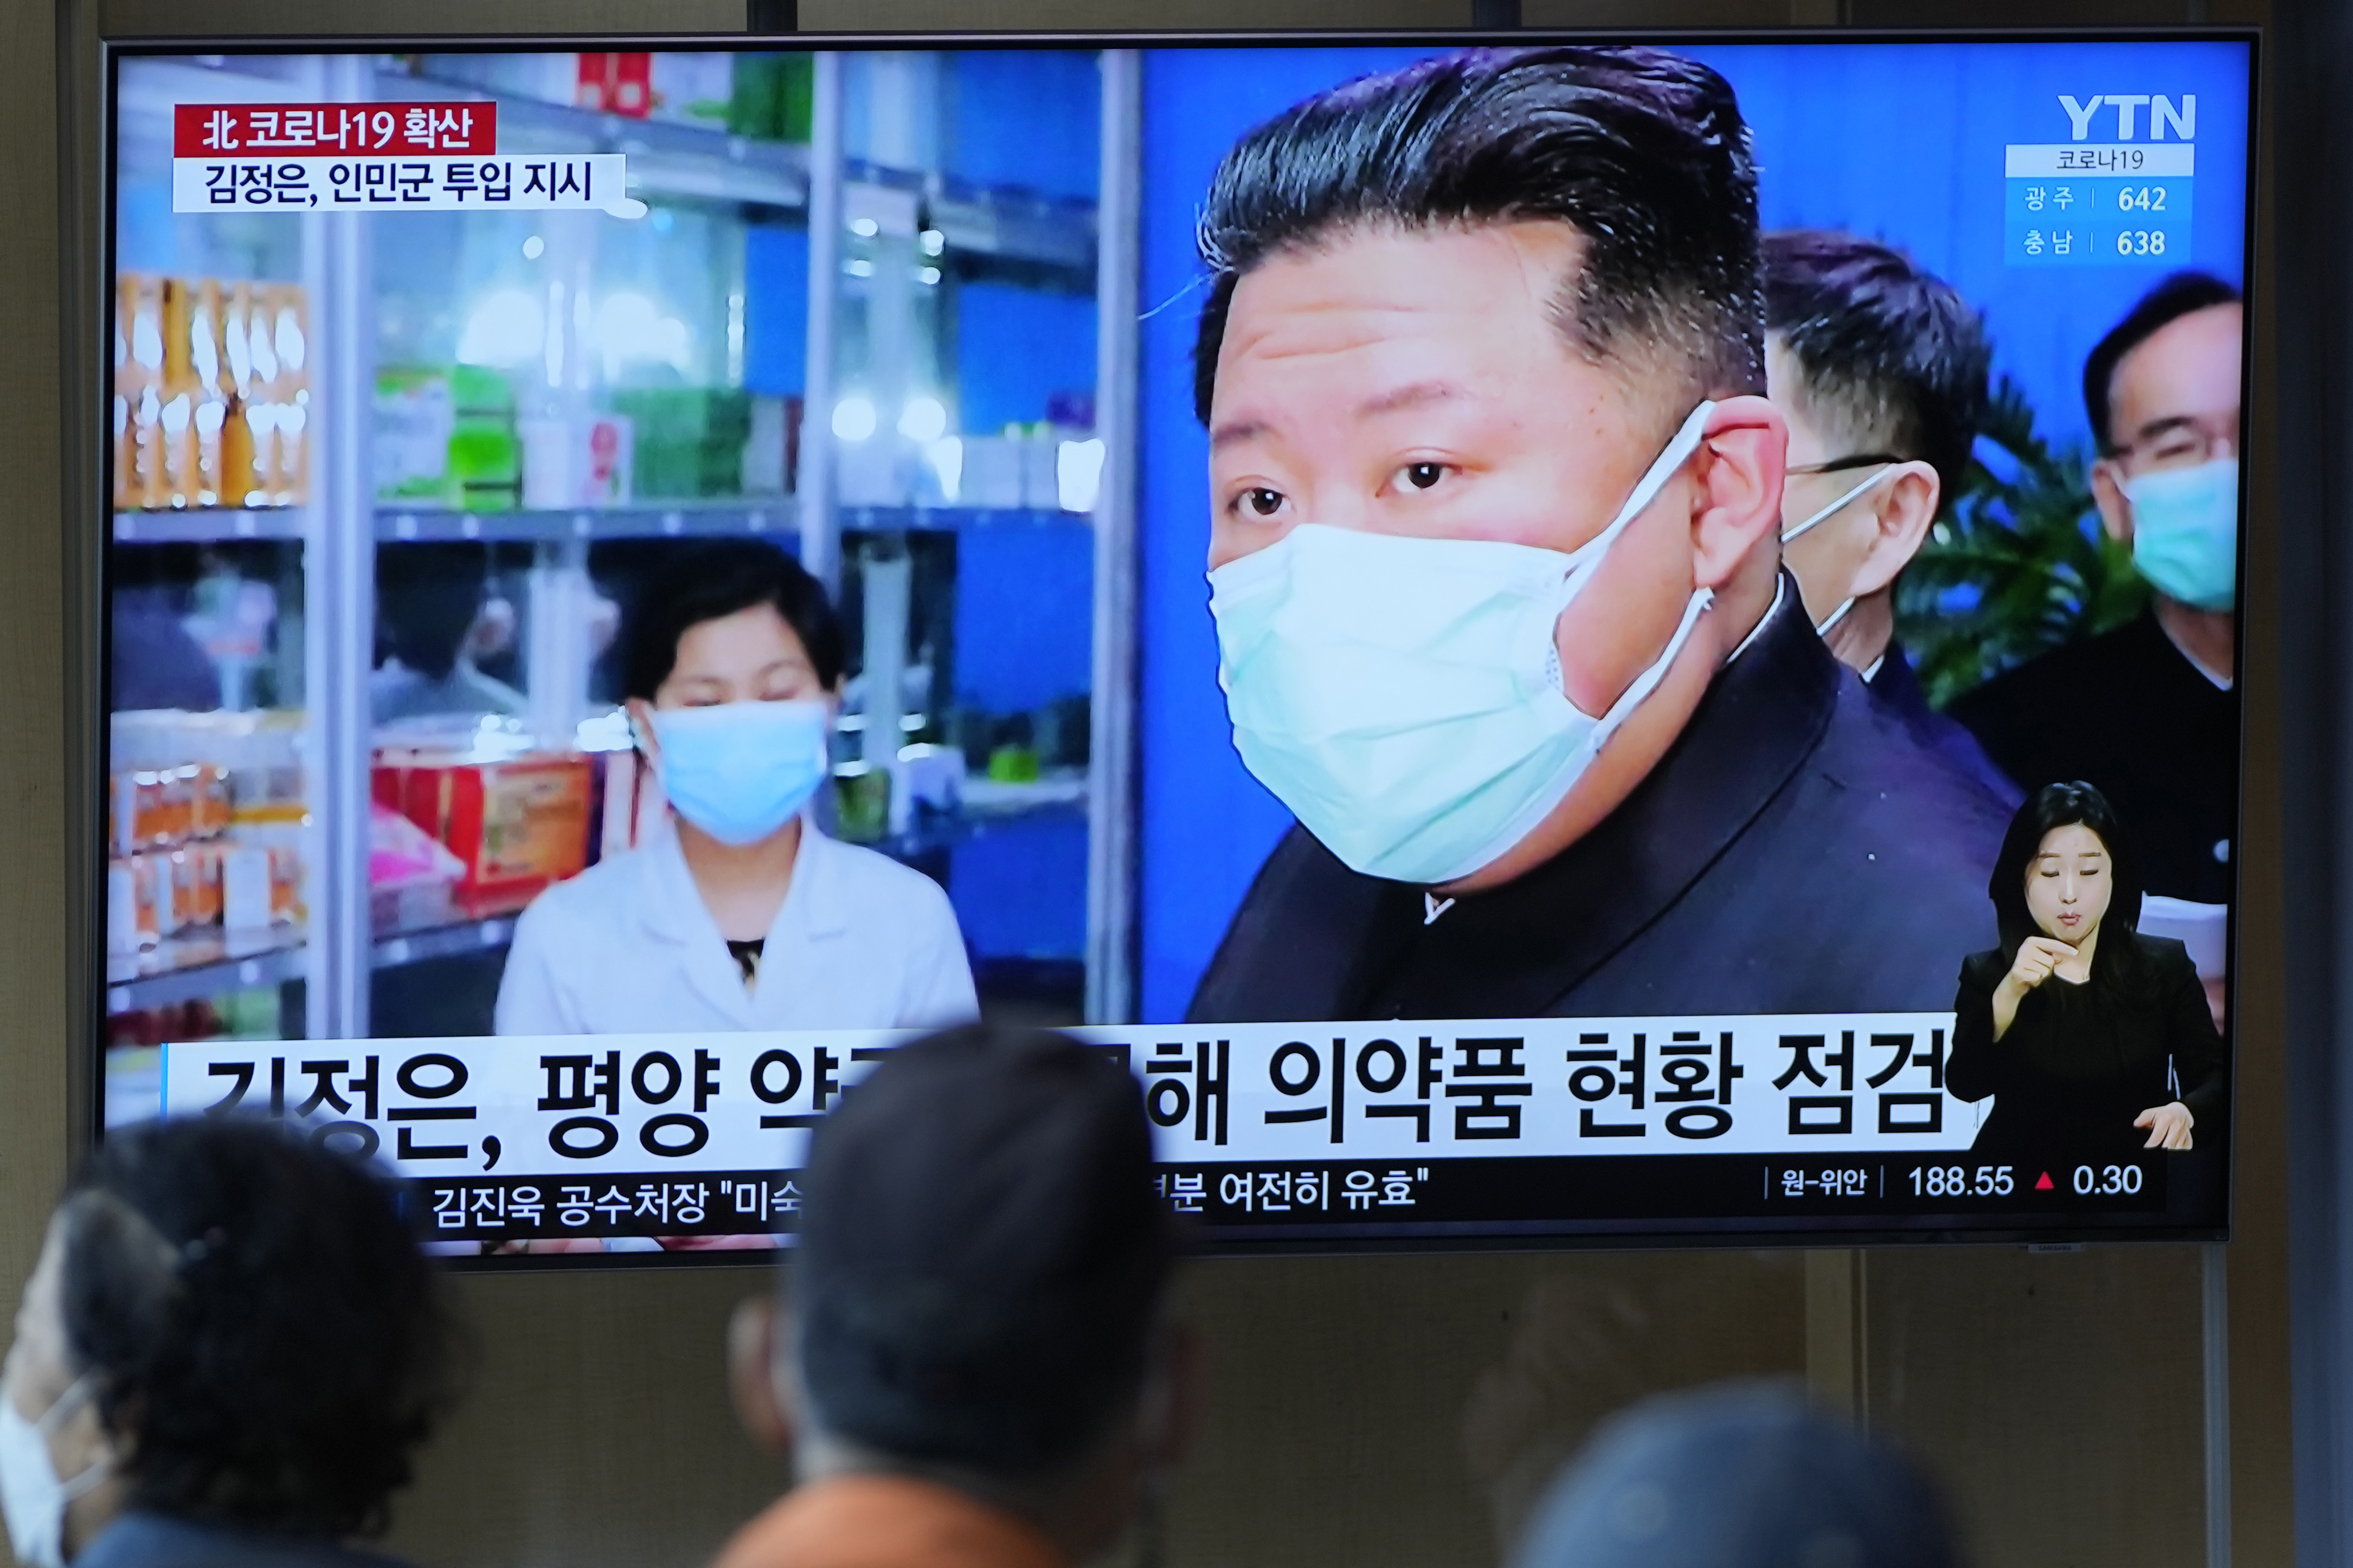 Corea del Norte reportó 232.880 nuevos contagios de COVID-19 y reconoció que hubo negligencia para atender la pandemia